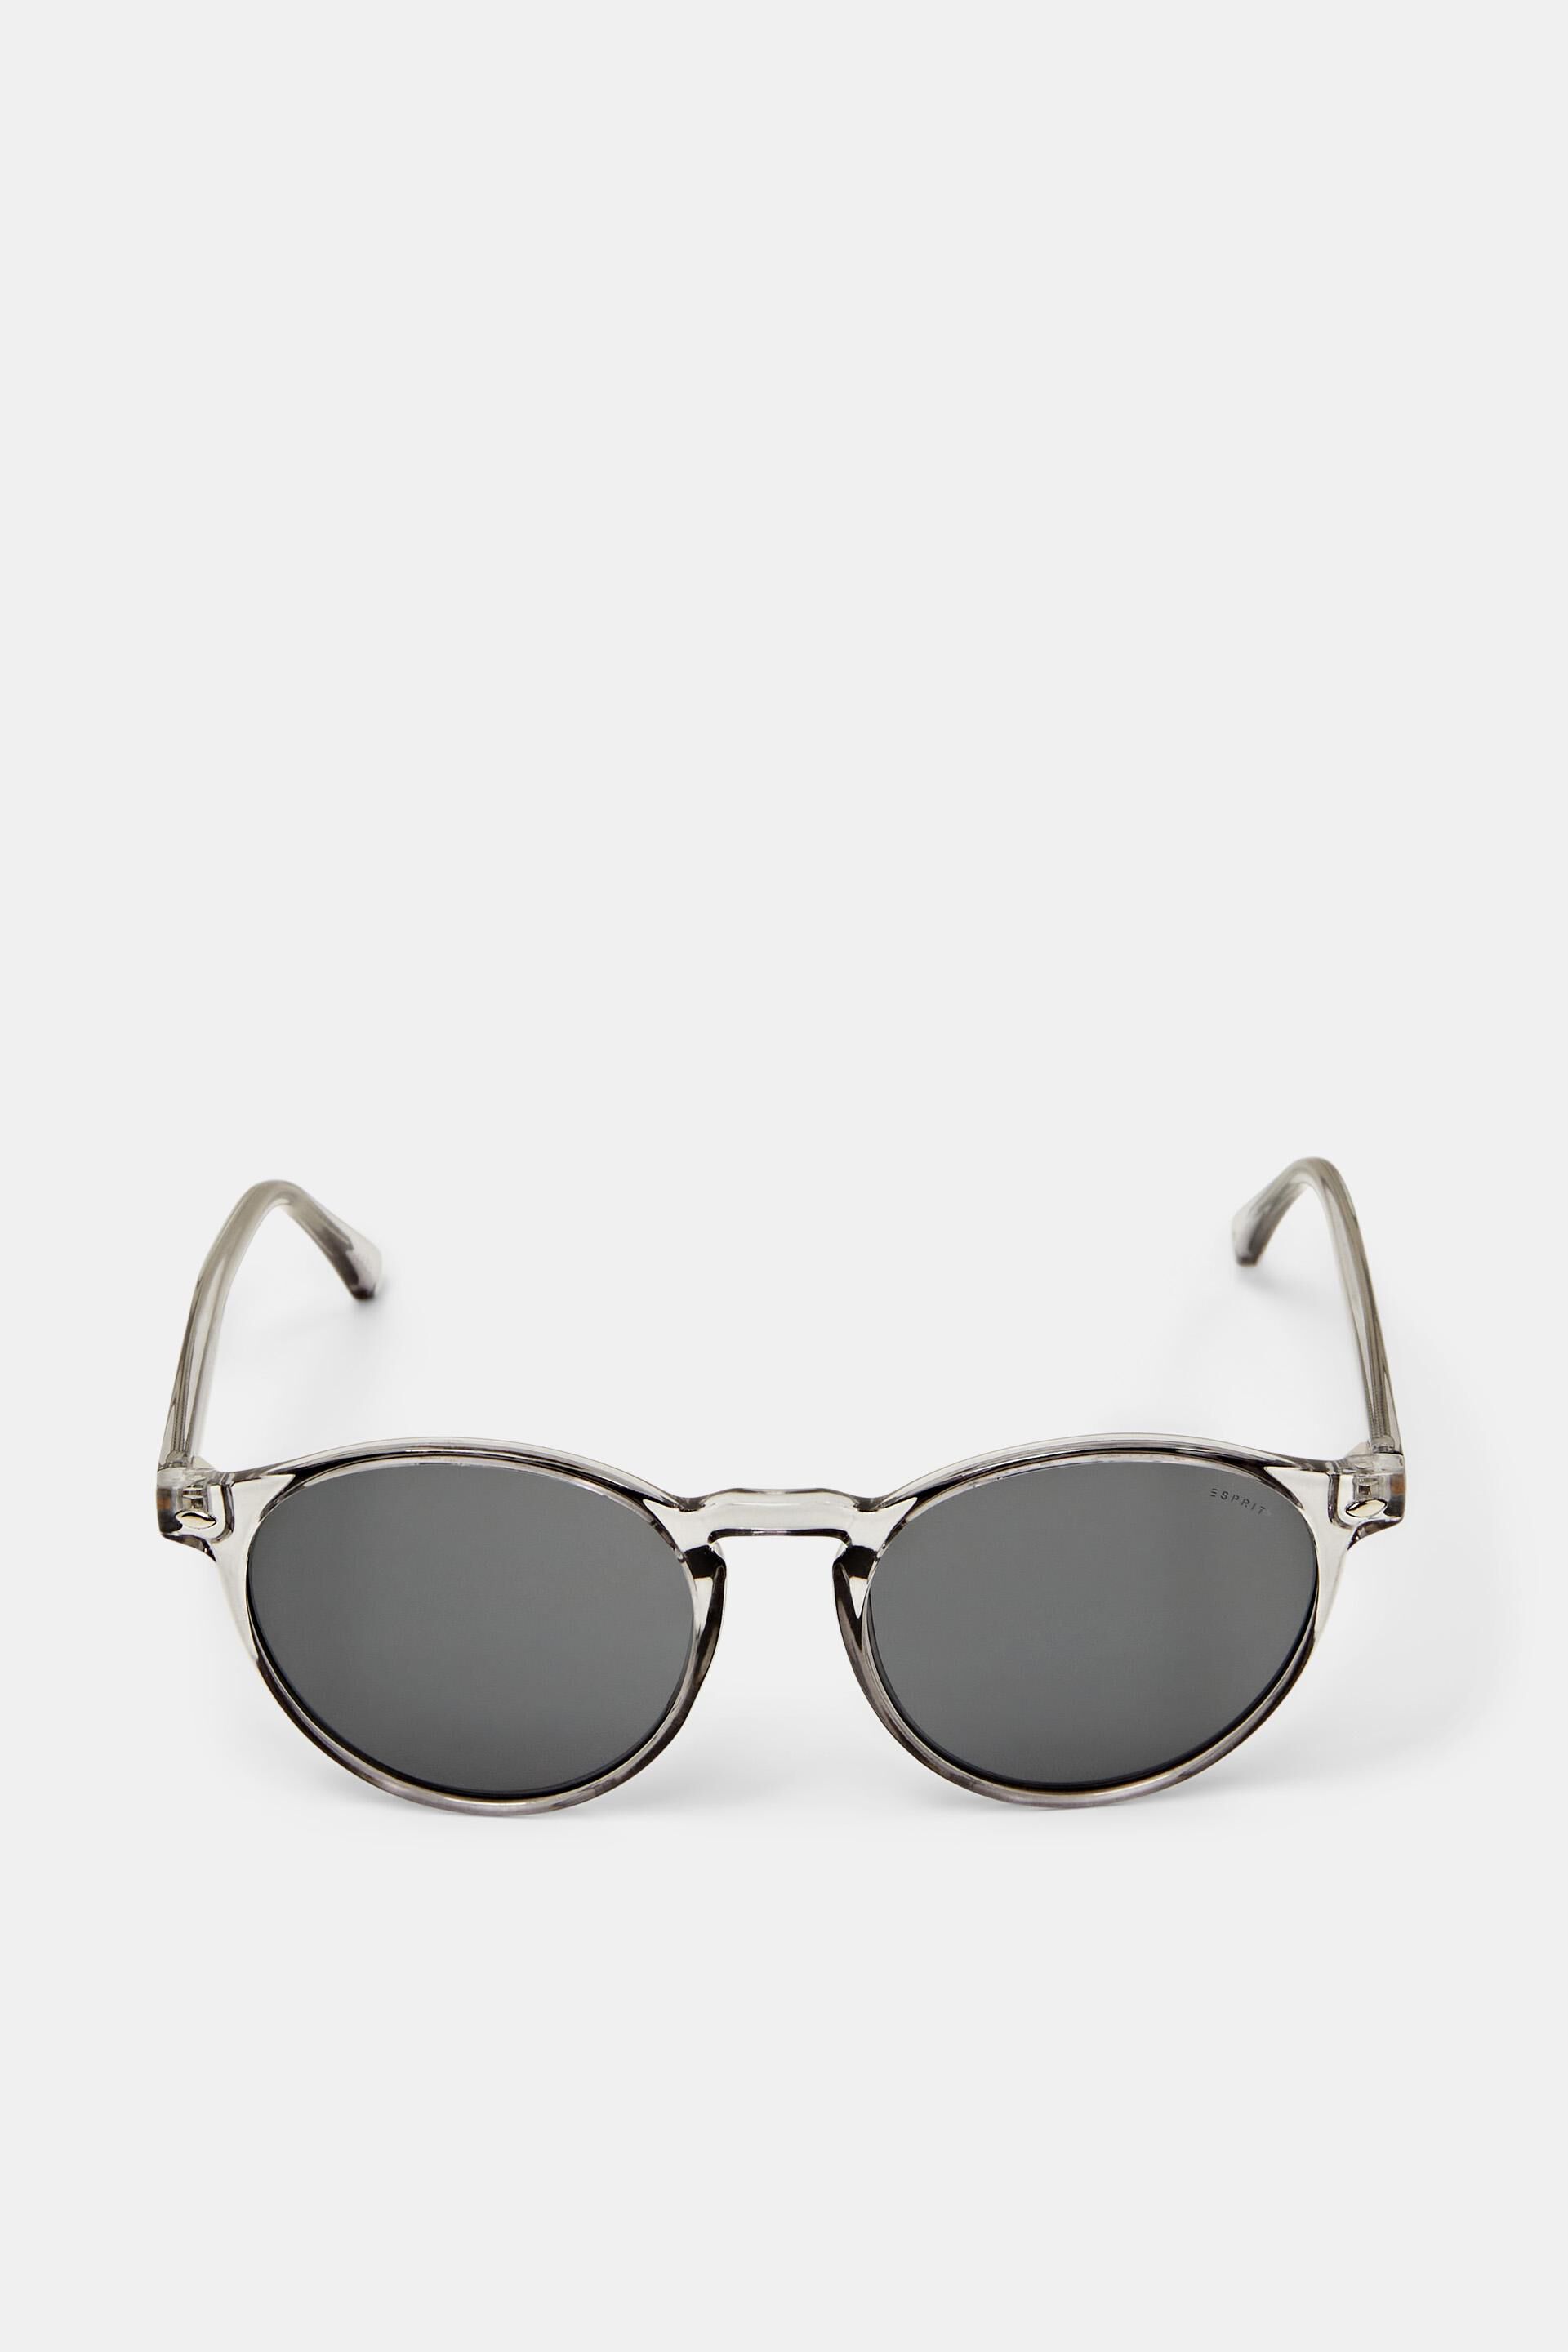 Esprit Mode Sunglasses with transparent round frame